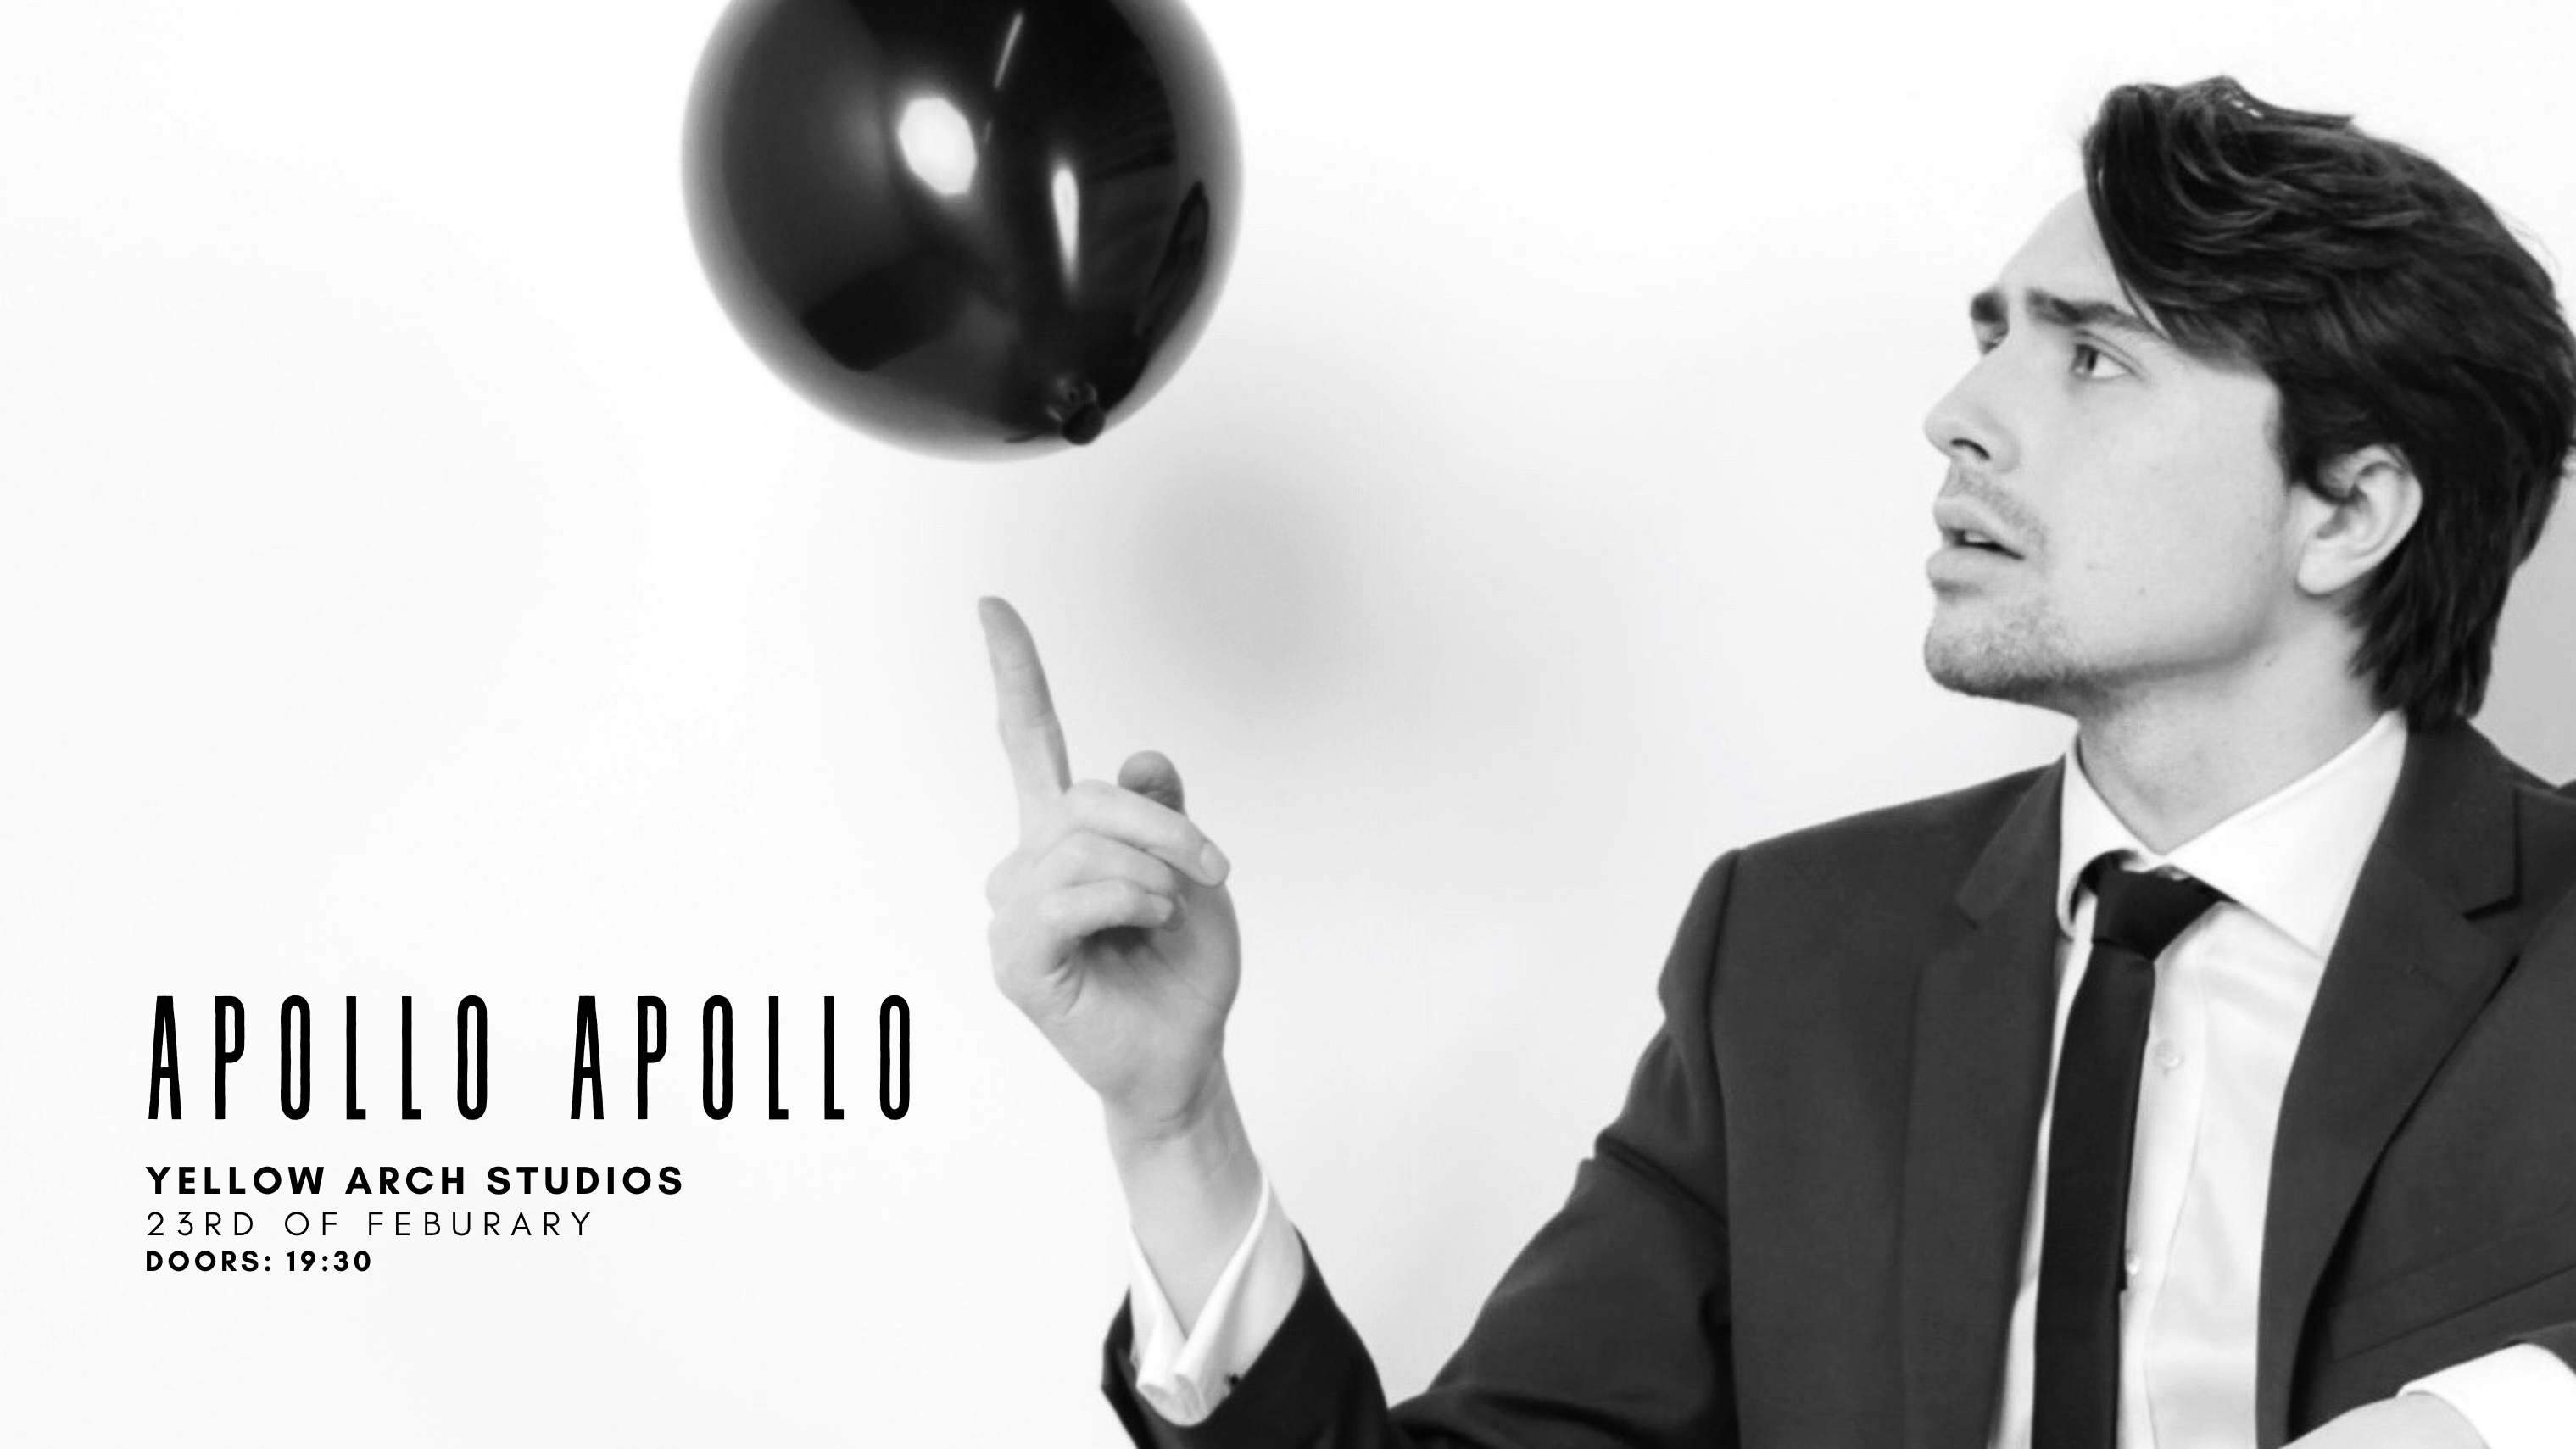 Apollo Apollo